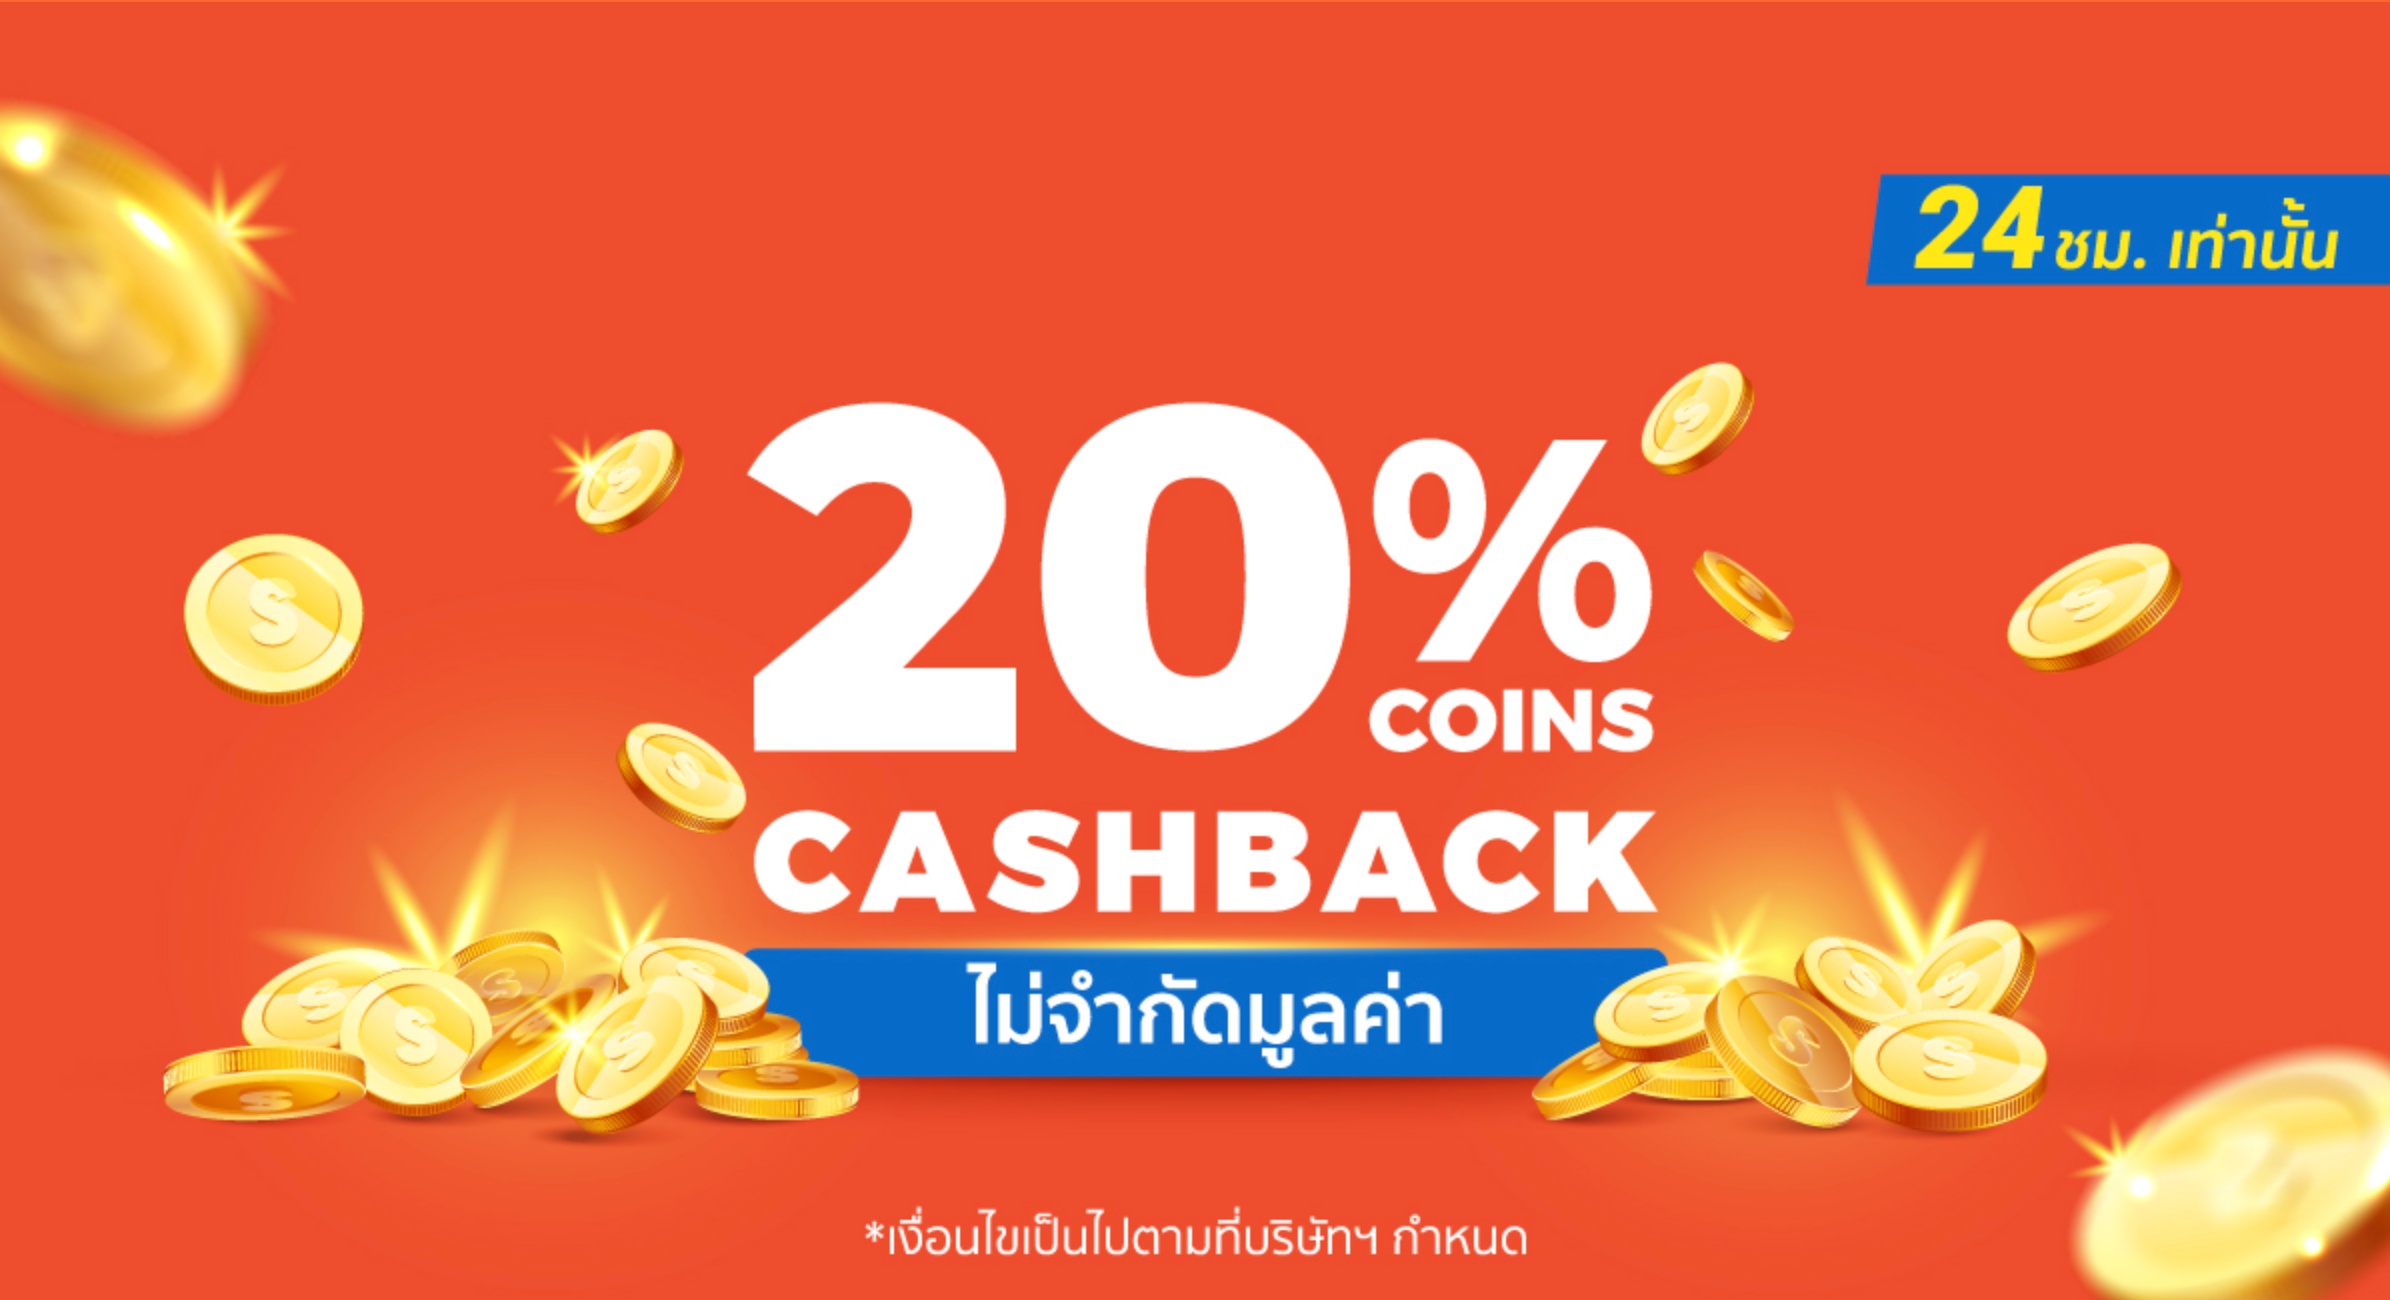 Shopee-coin-cashback-20